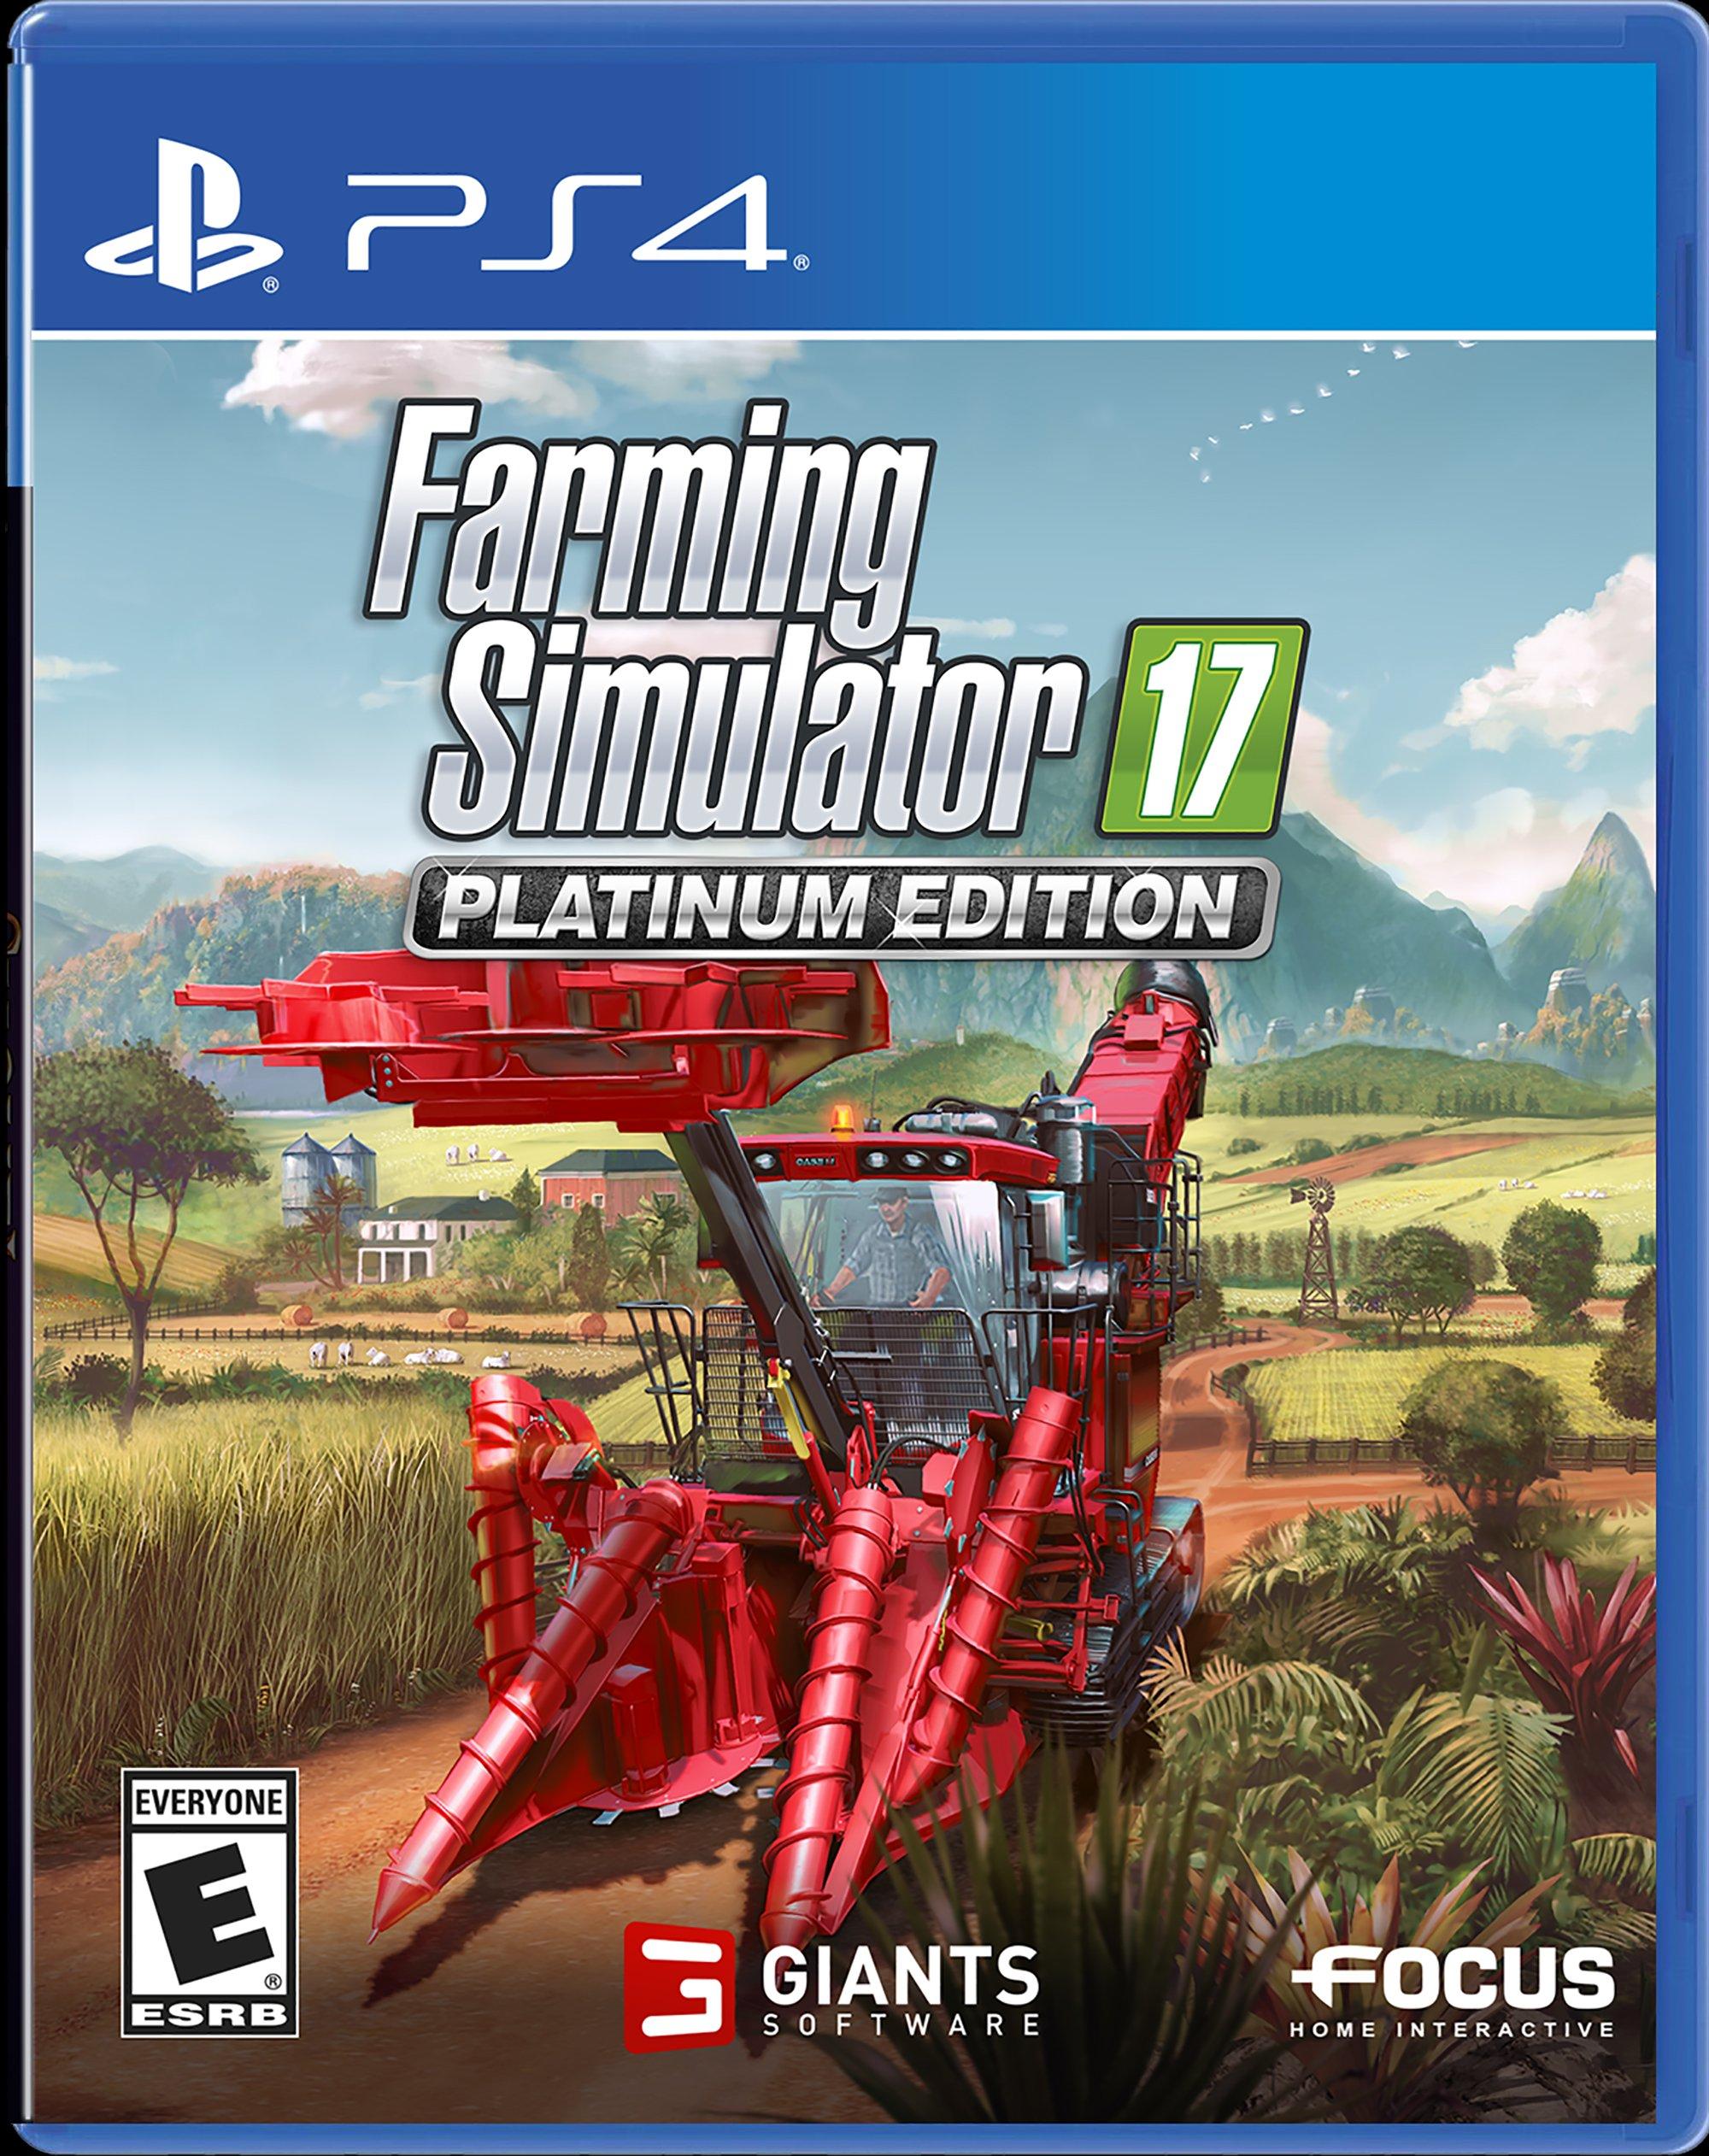 Farming Simulator 17 - PS4 Pro Compatibility Announced